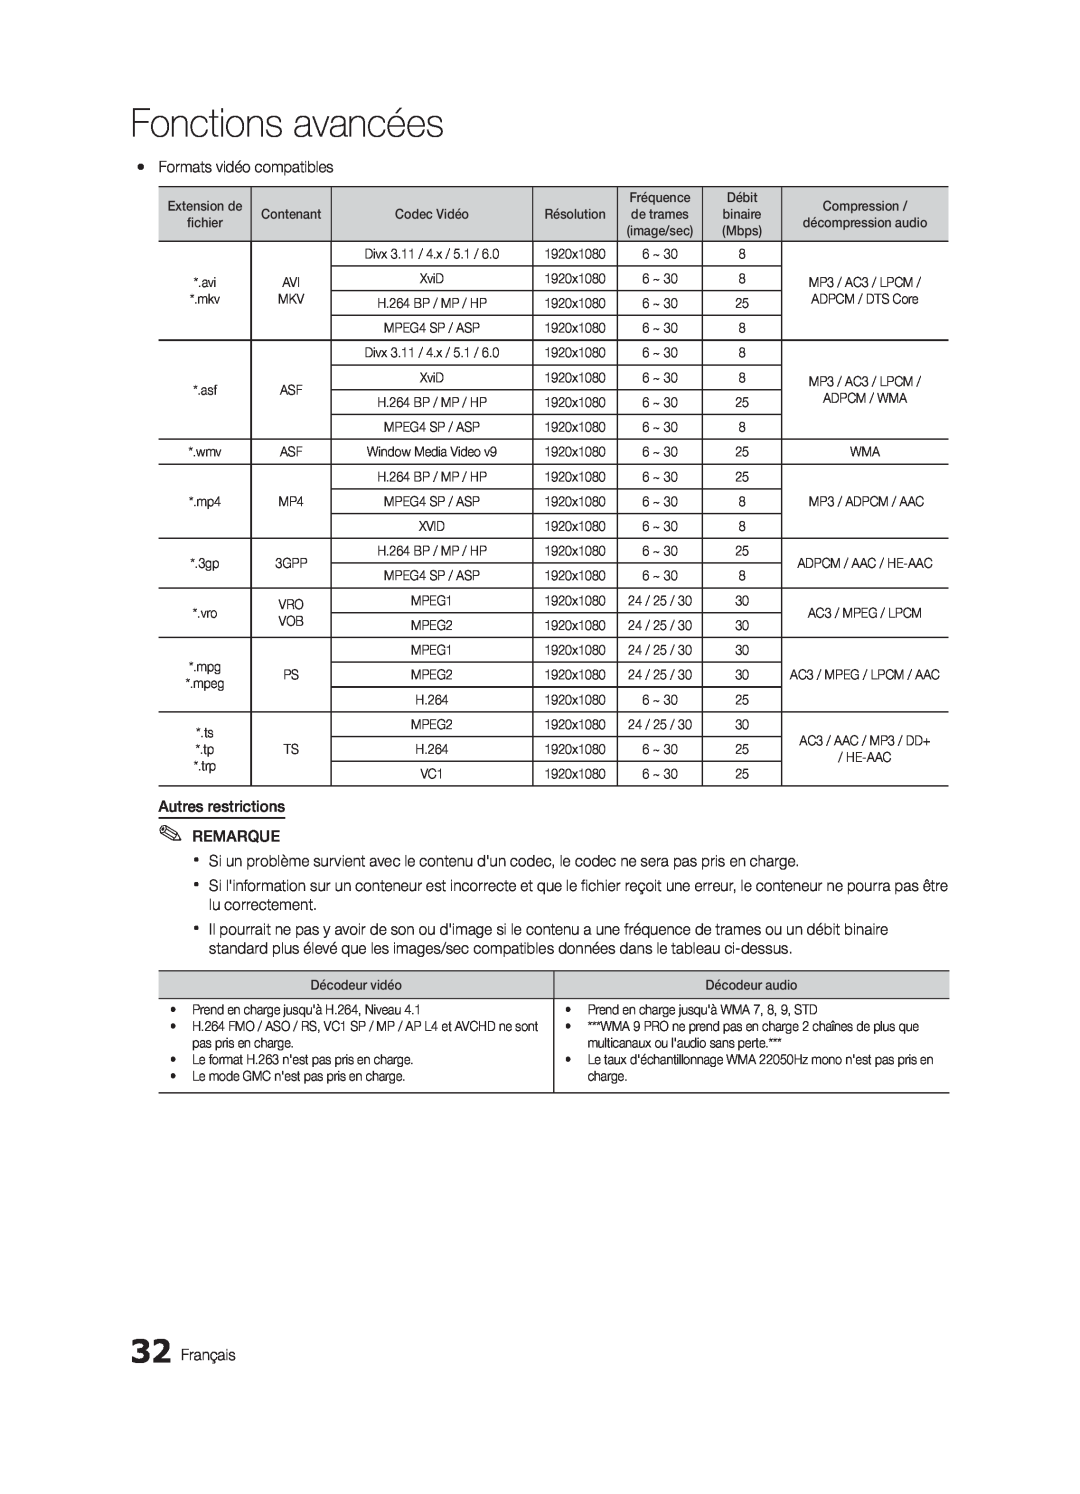 Samsung LN32C550 user manual Fonctions avancées, yy Formats vidéo compatibles, Autres restrictions REMARQUE, Français 